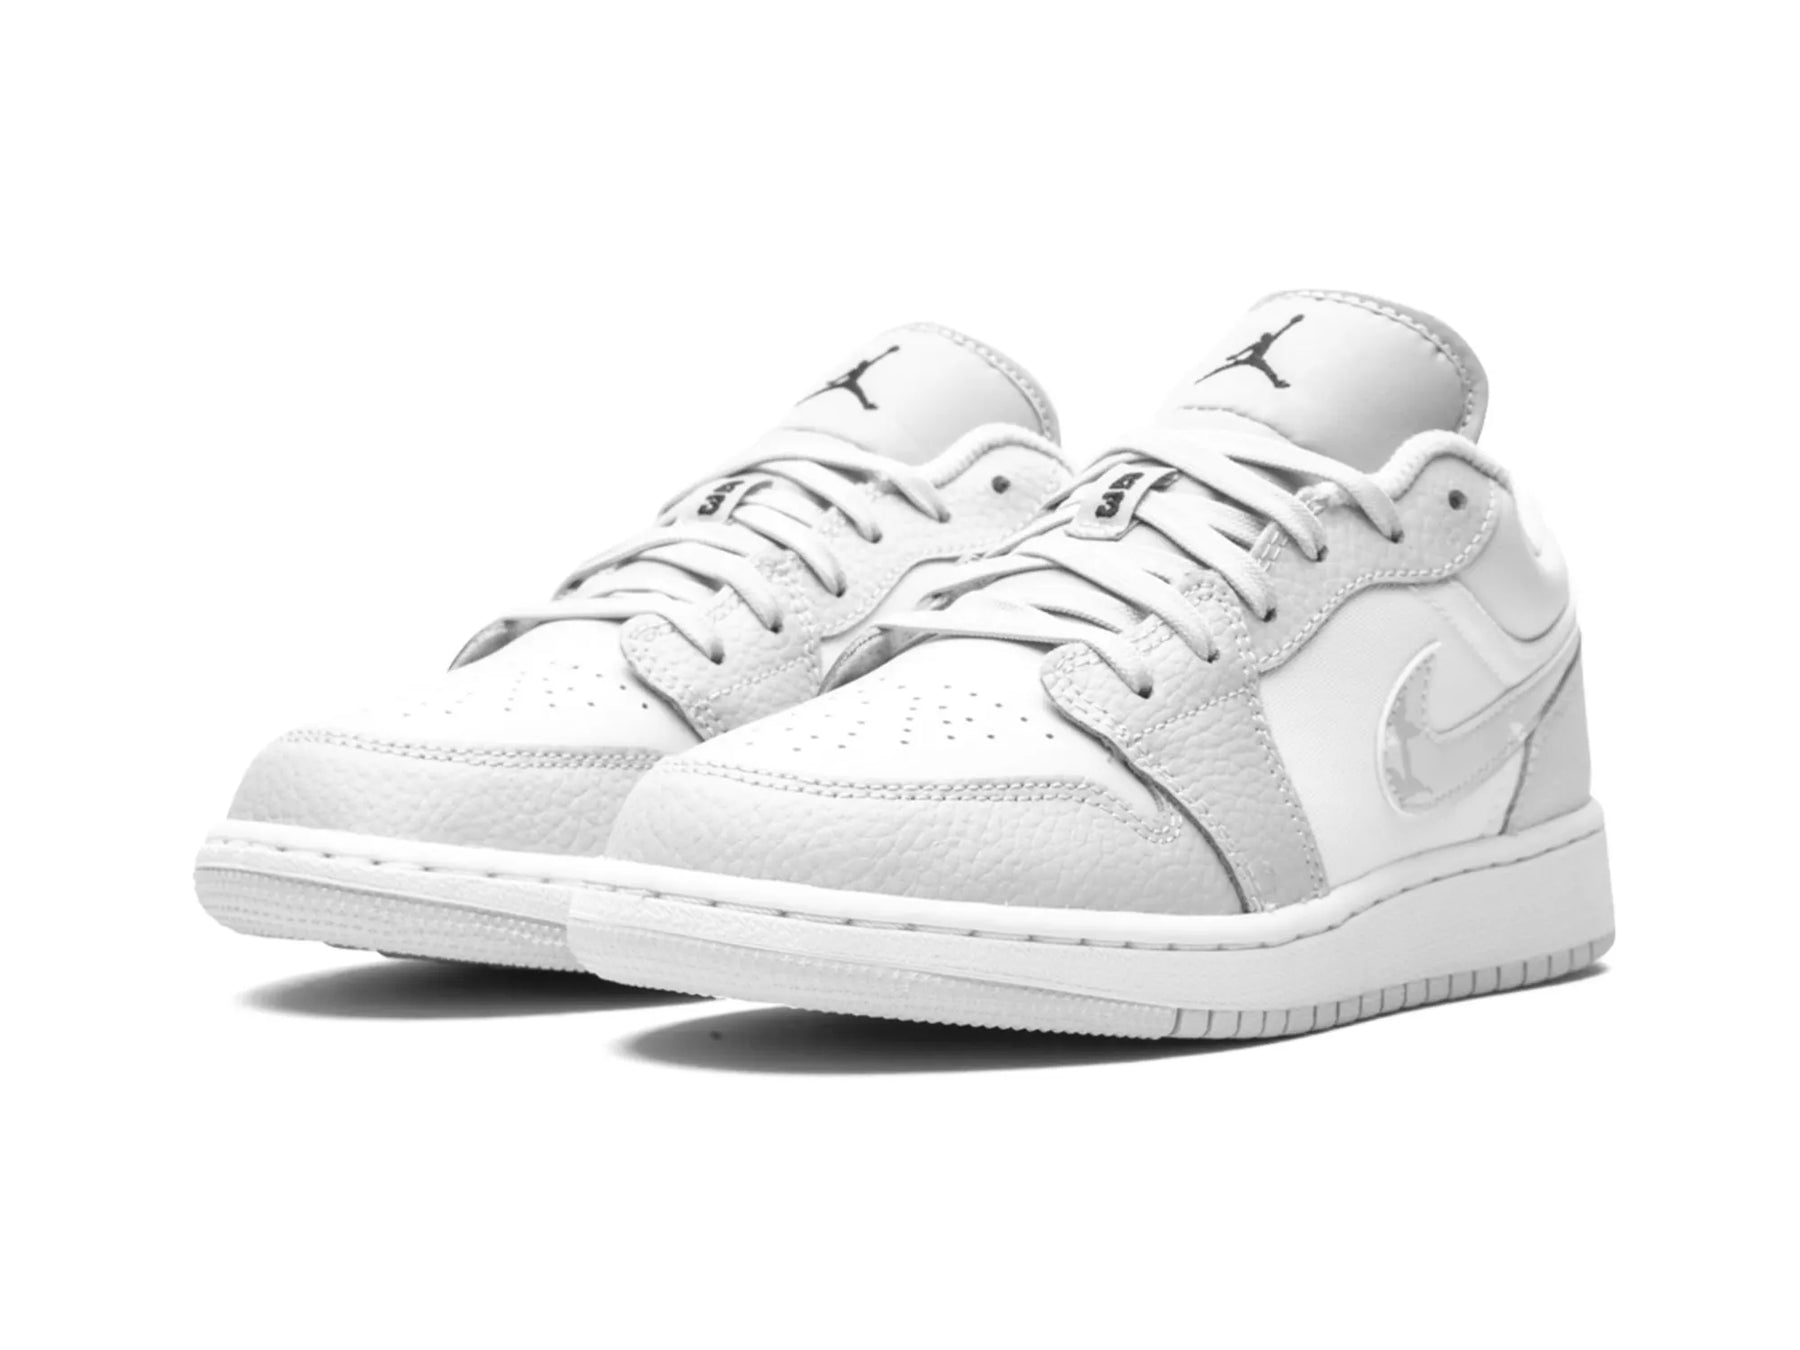 Nike Air Jordan 1 Low "Grey Camo" - street-bill.dk